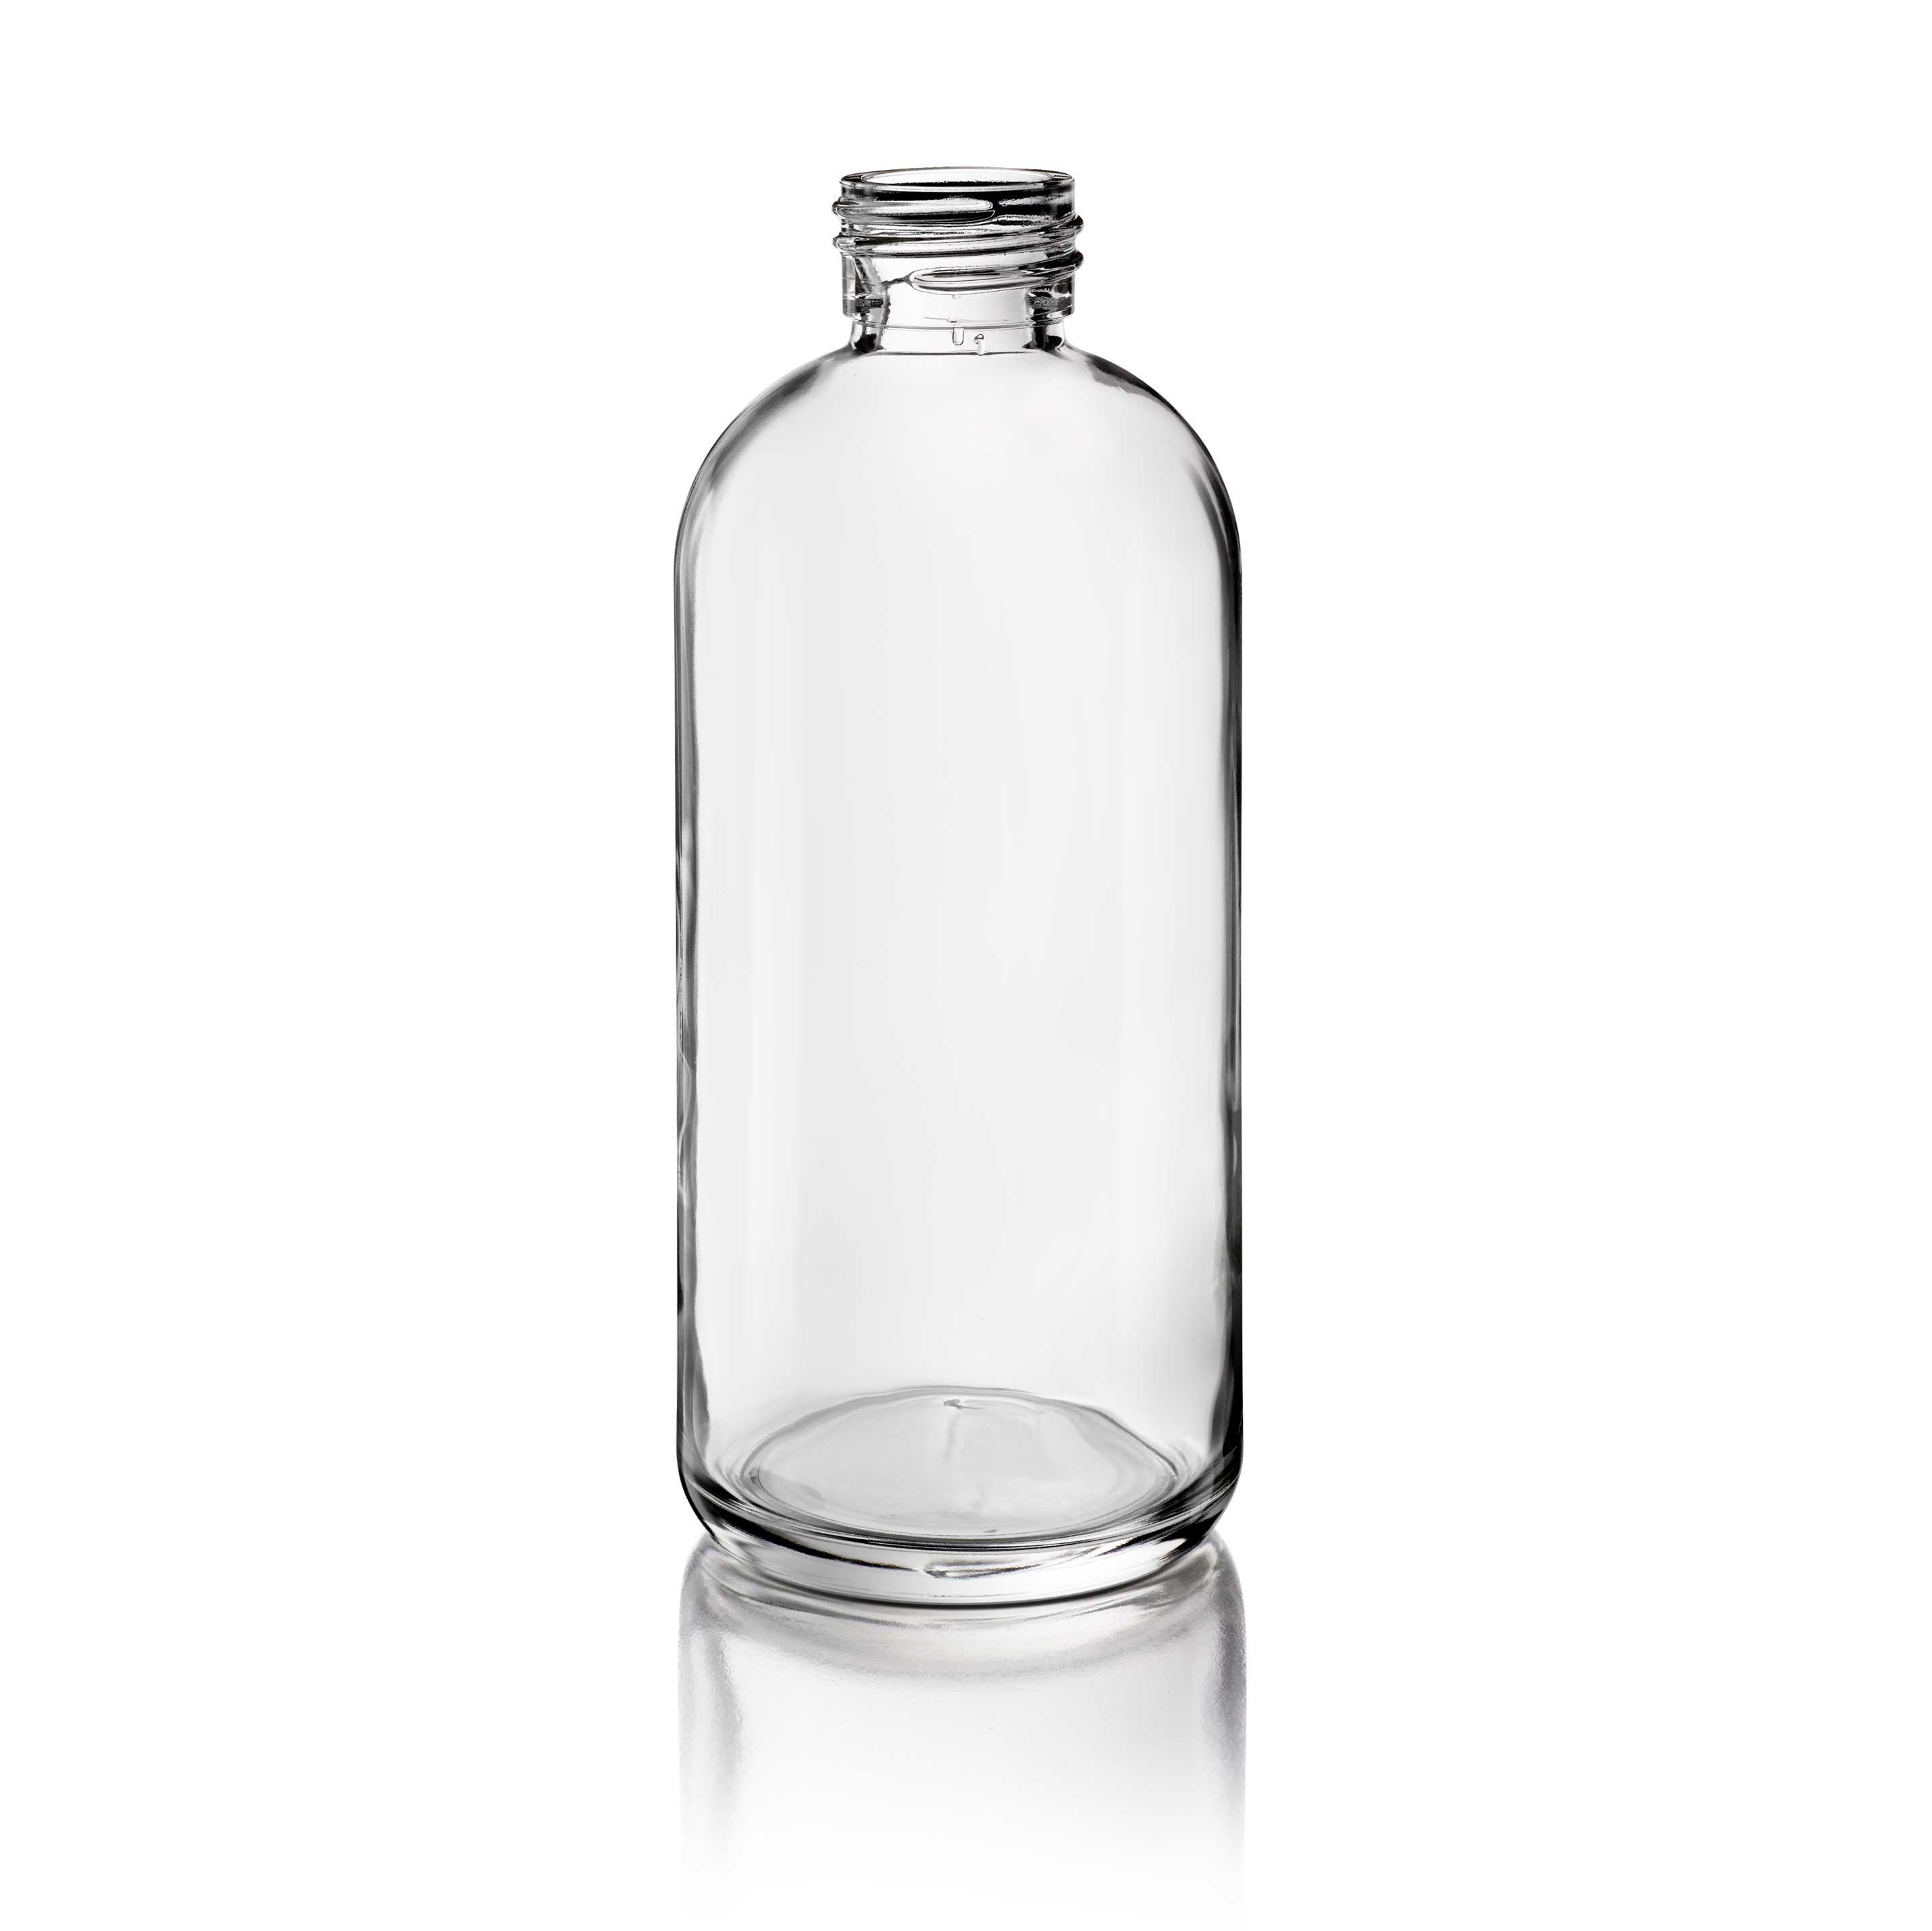 Cosmetic bottle Linden Light Weight 150ml, 24/410, Flint